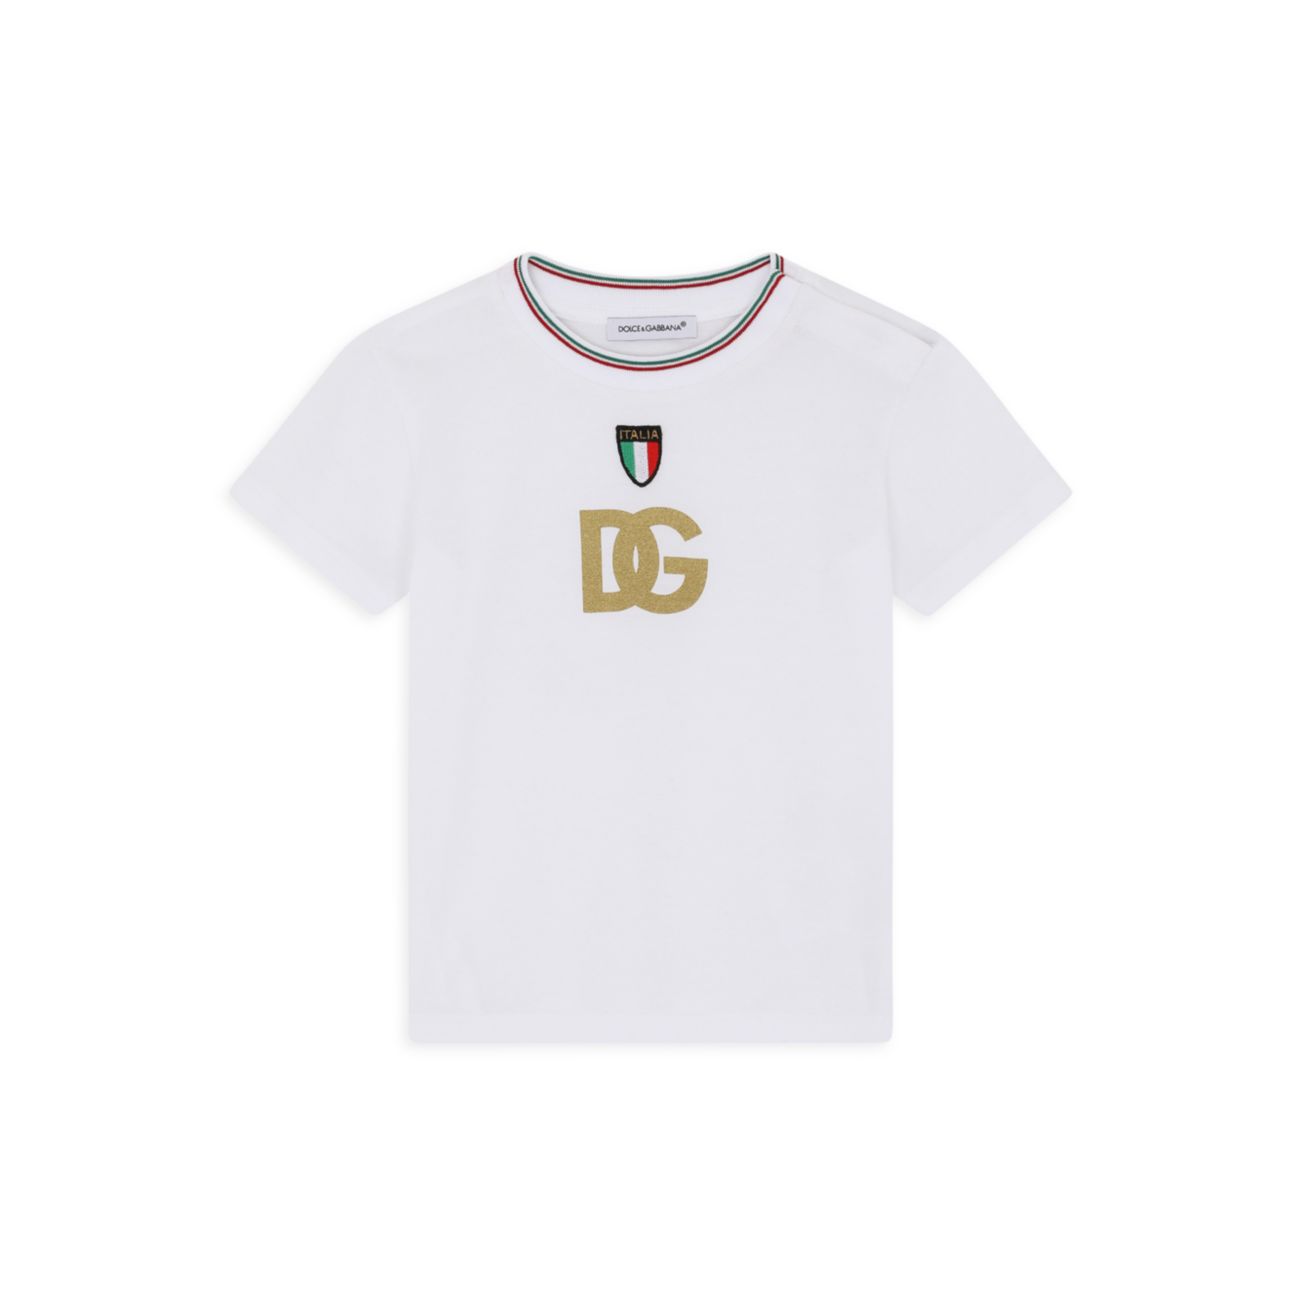 Детская хлопковая футболка с логотипом Dolce & Gabbana